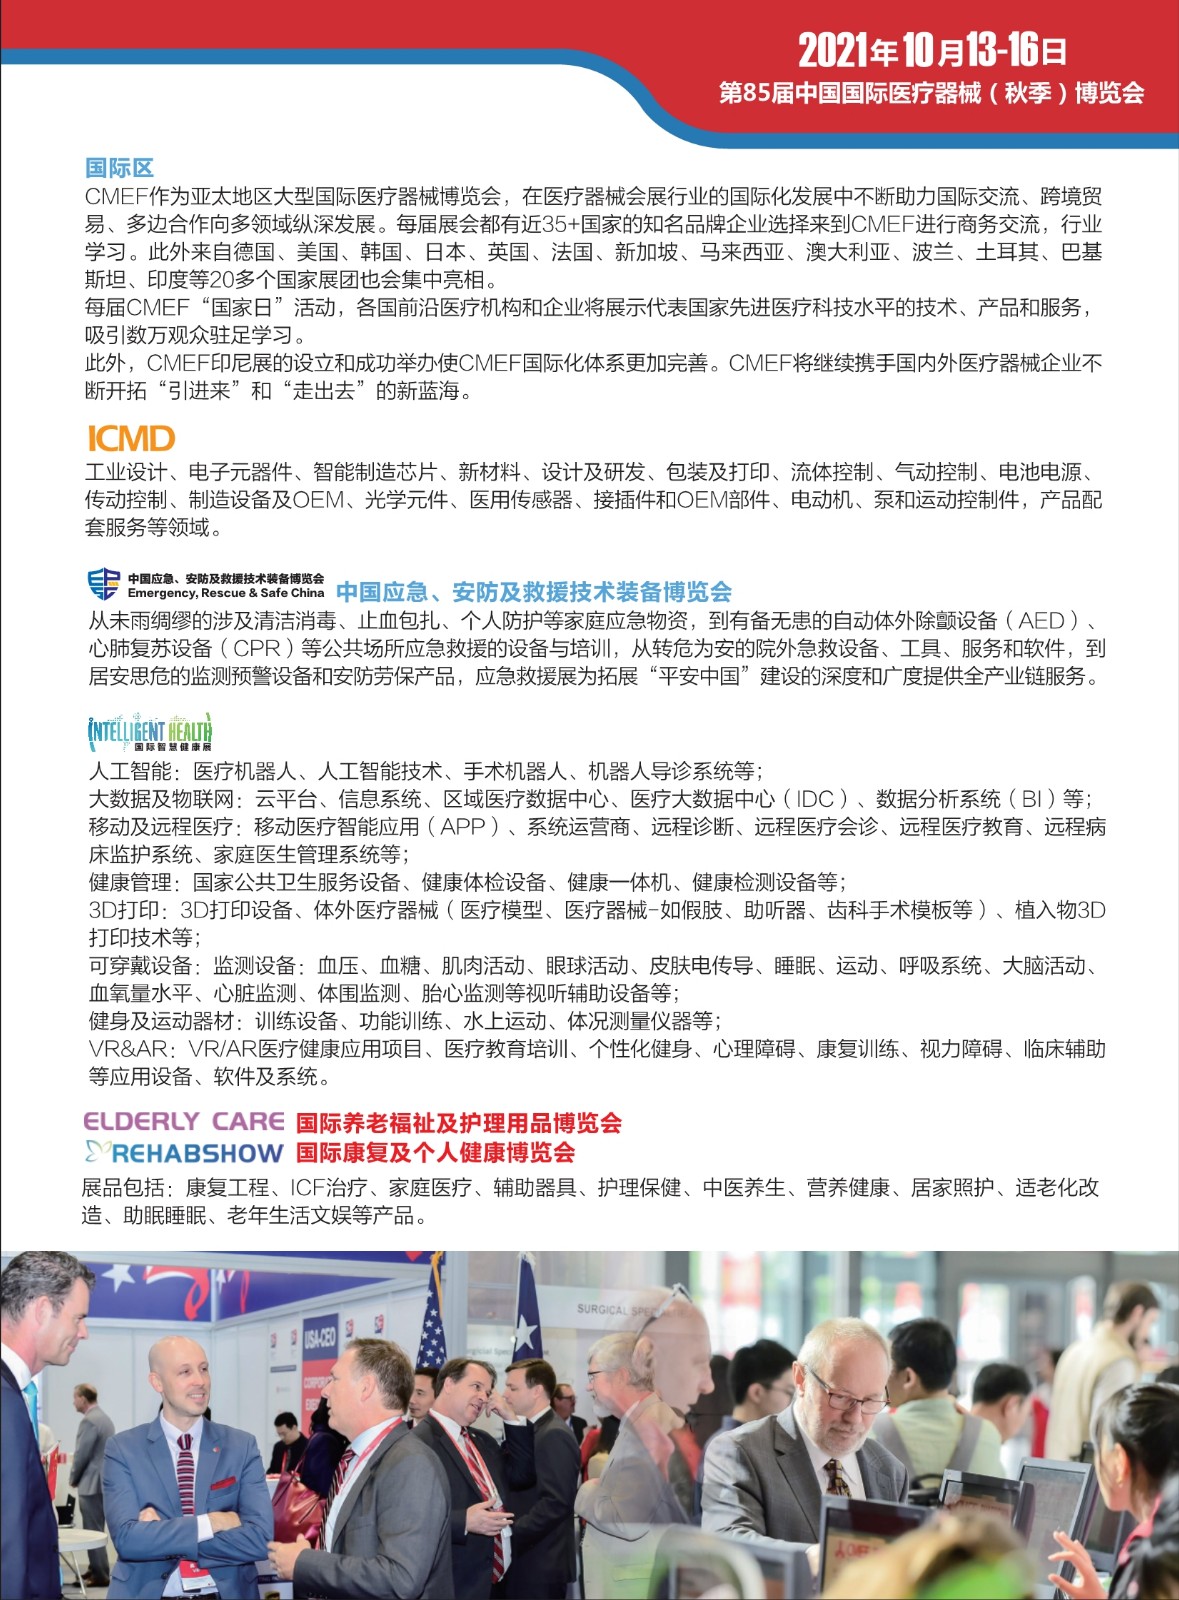 中国国际医疗器械展览会 CMEF